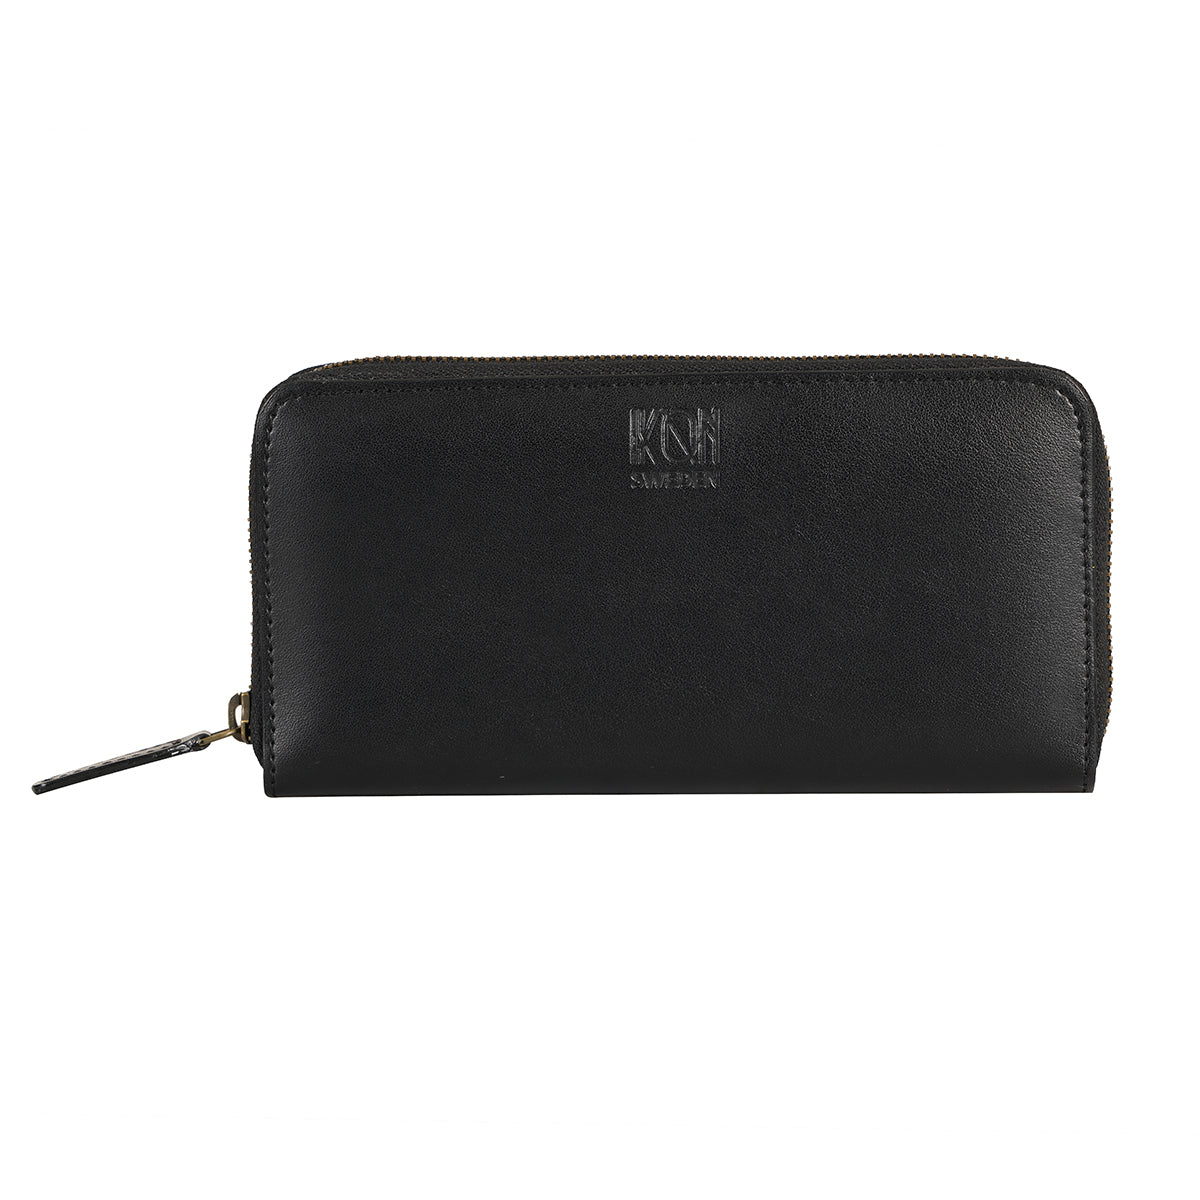 Black Long zip leather wallet for women